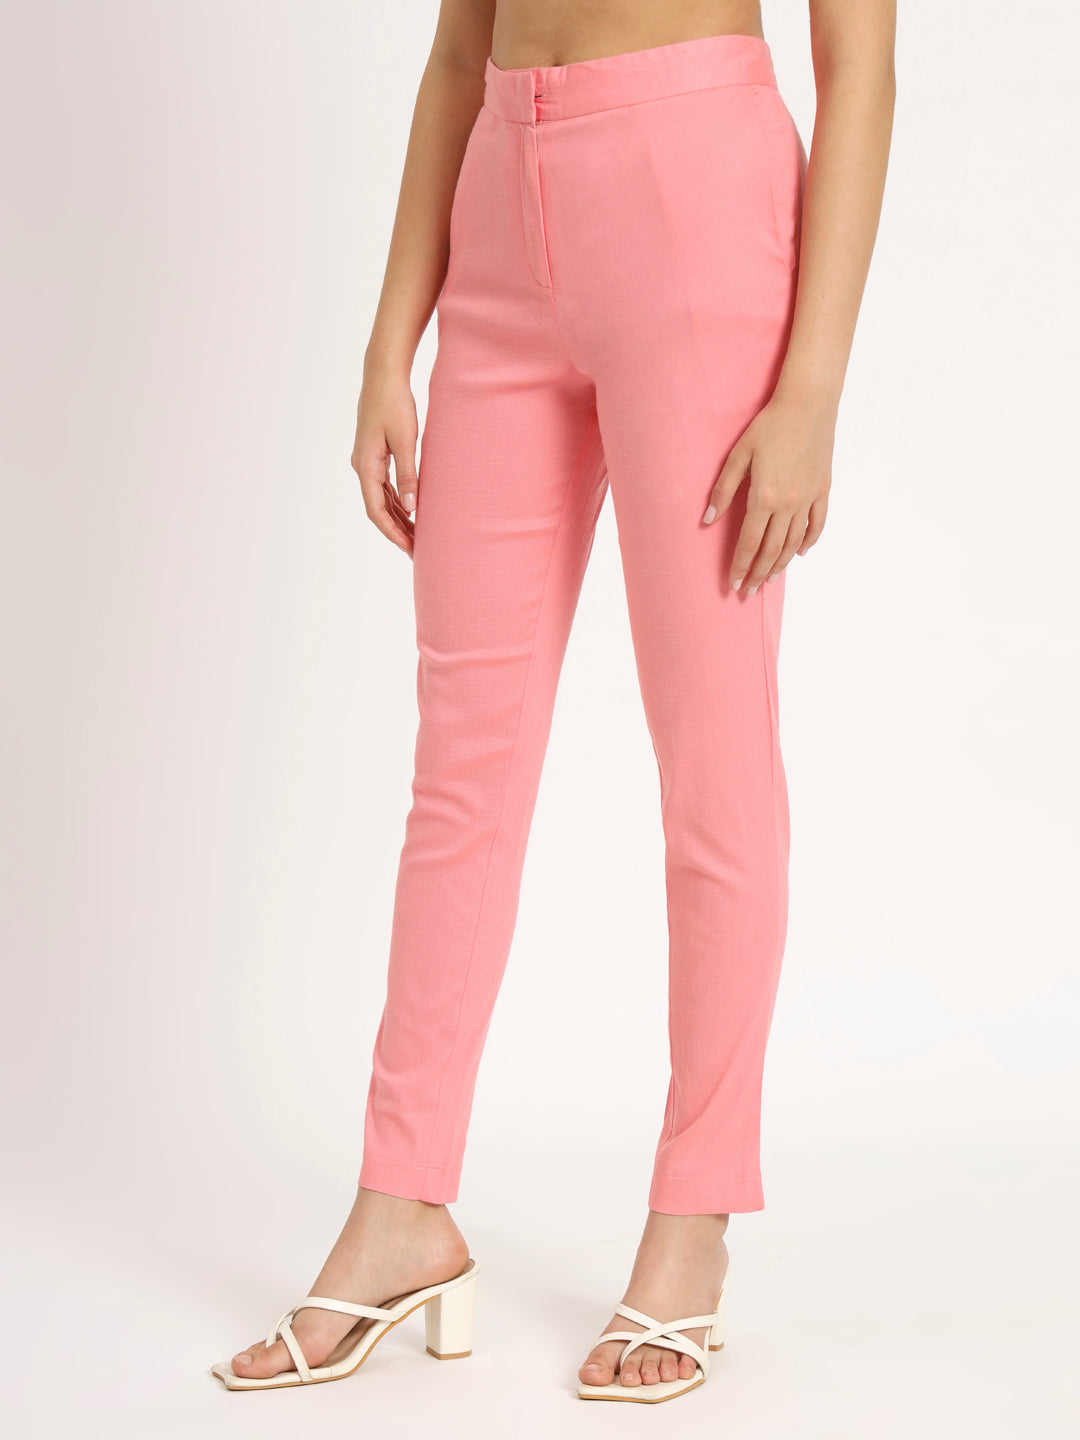 Blush Pink Colour Lycra Pants